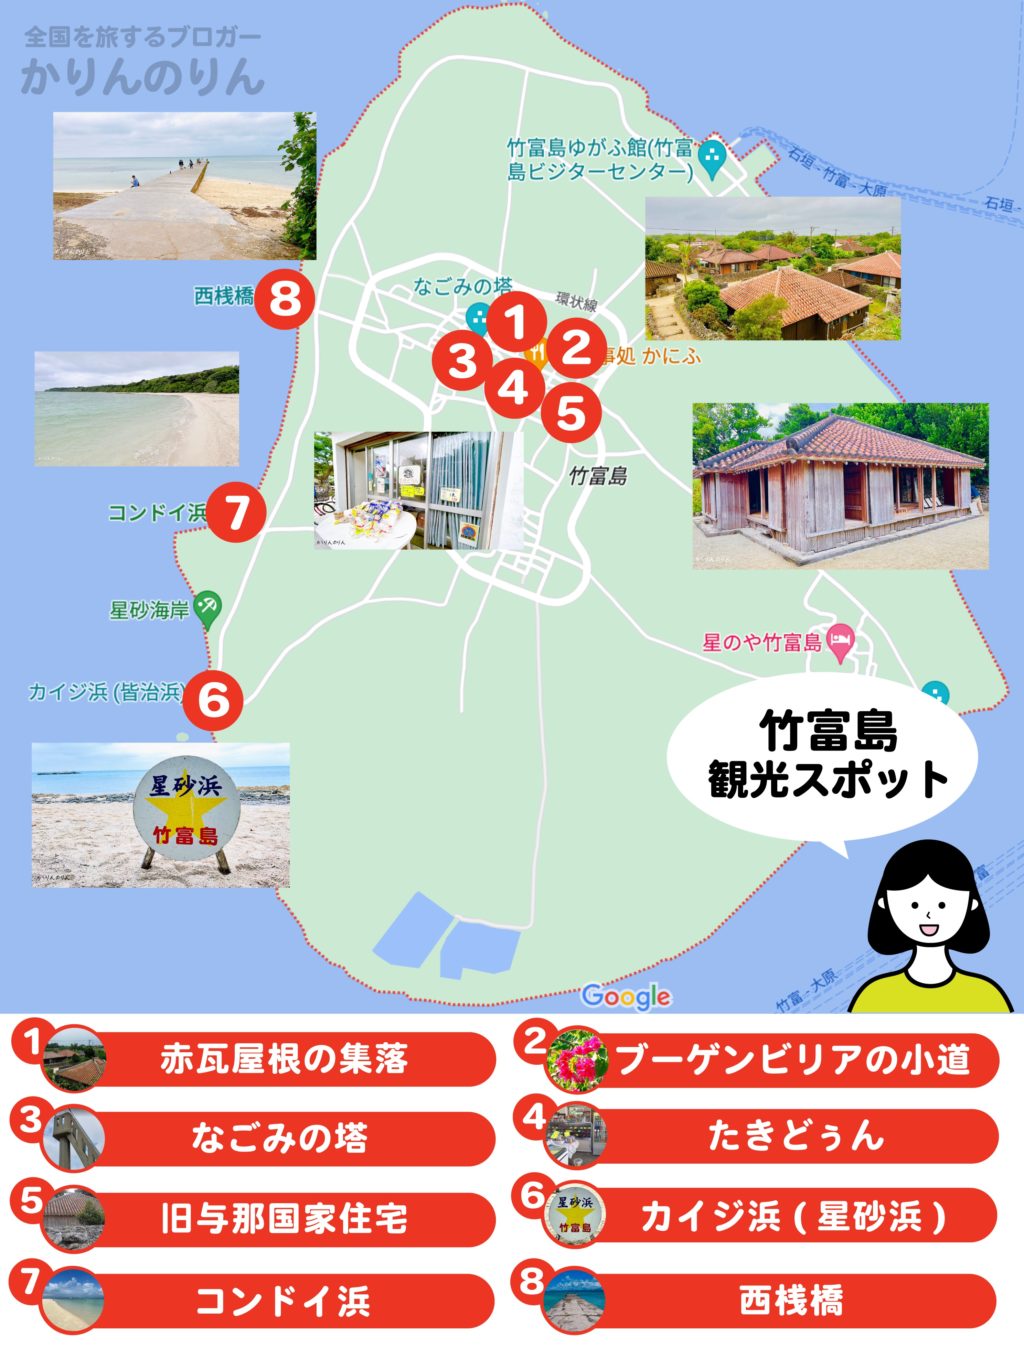 竹富島モデルコース観光スポットマップ